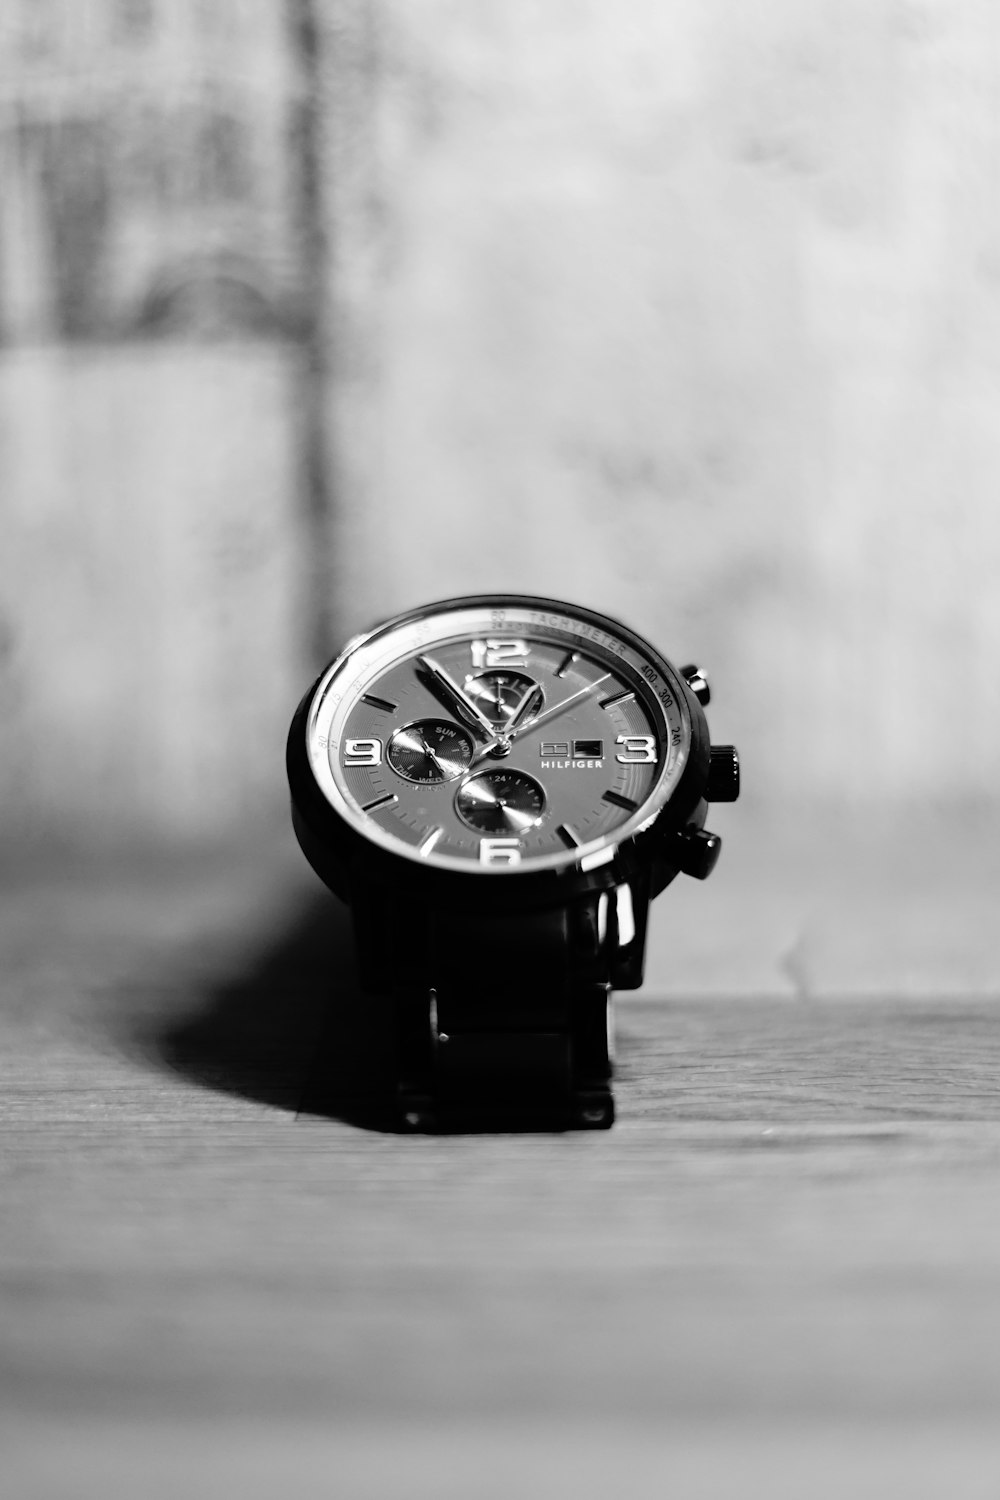 Una foto en blanco y negro de un reloj